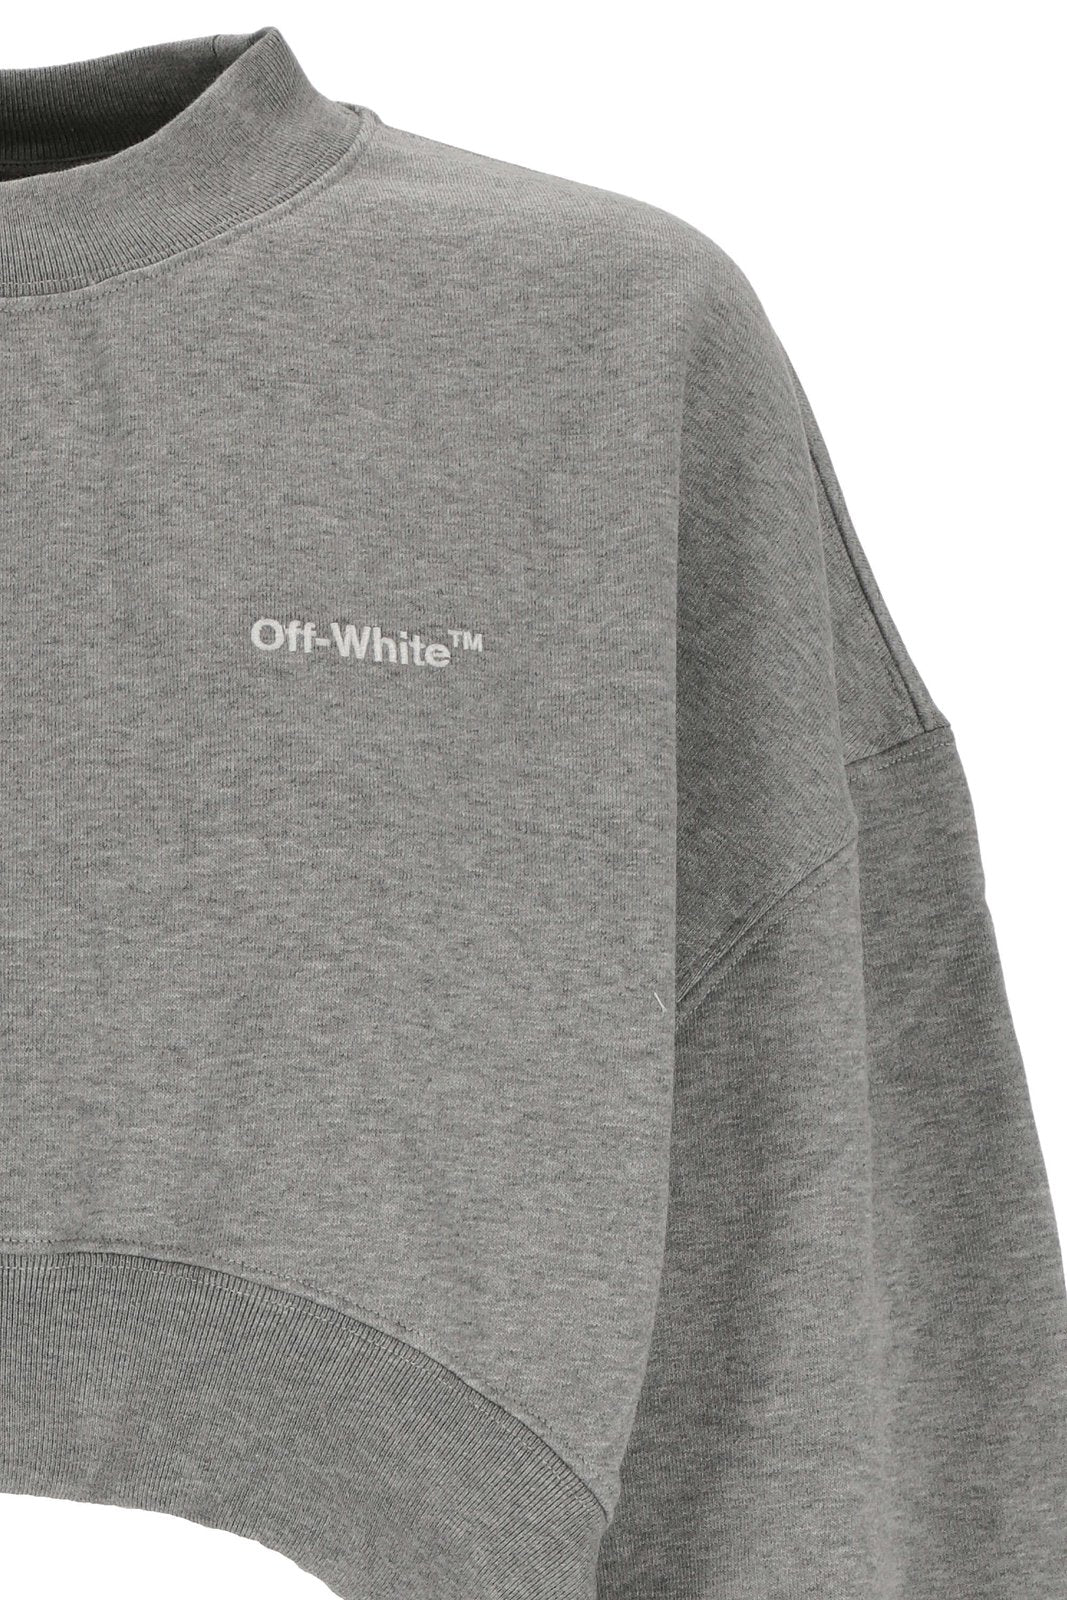 Off-White Oversized-Sleeve Cropped Crewneck Sweatshirt